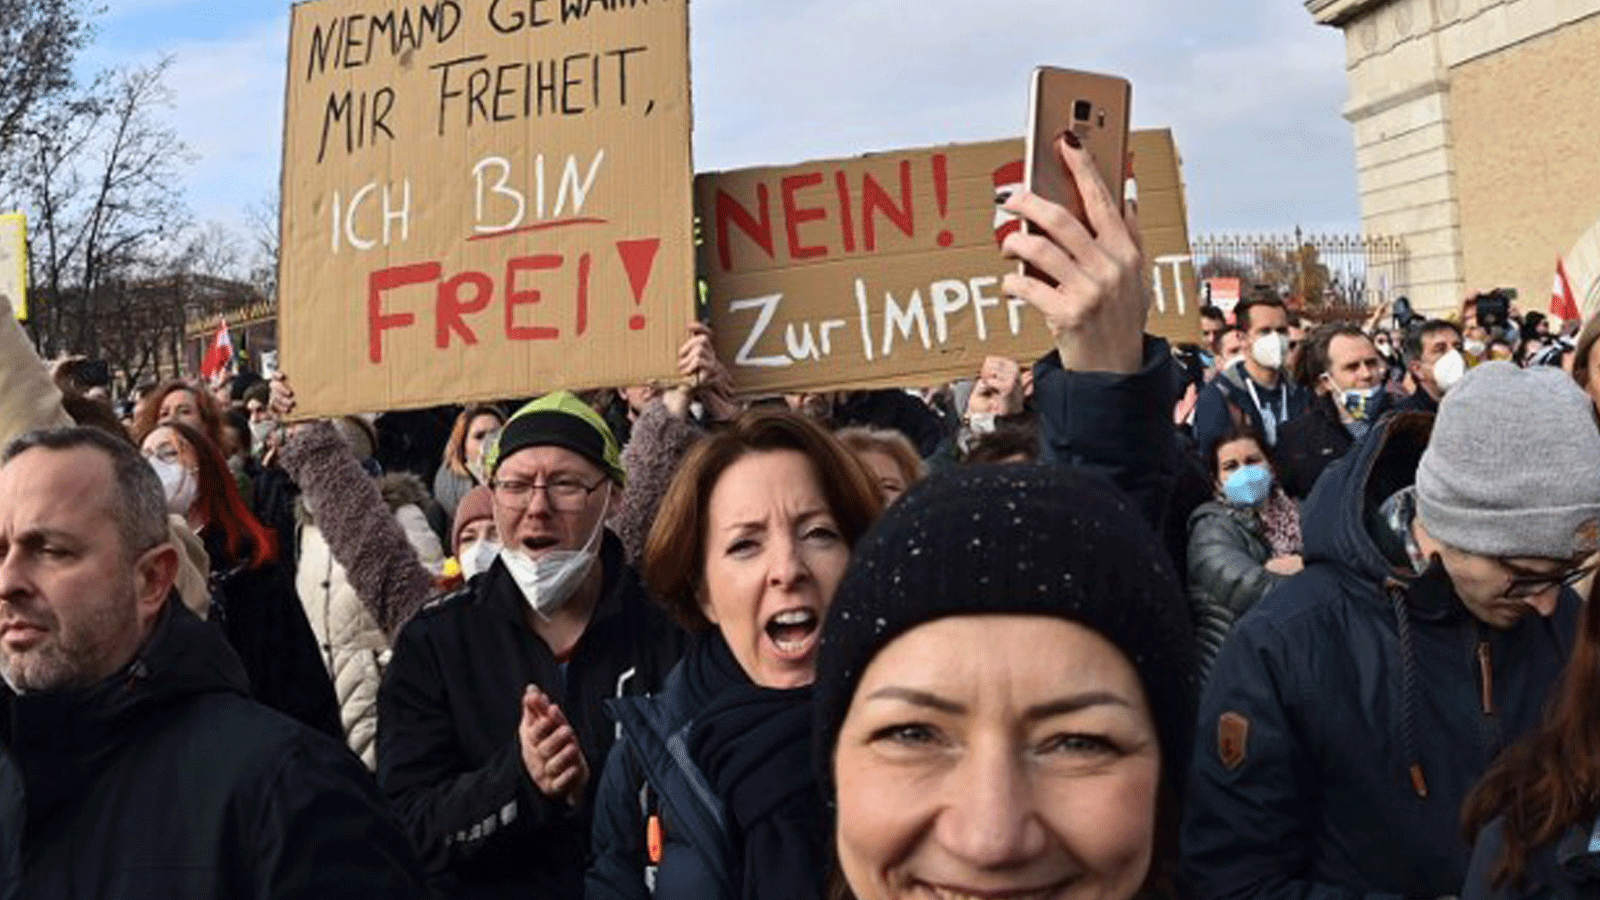 متظاهرون يشاركون في مسيرة نظمها حزب الحرية اليميني المتطرف النمساوي ضد الإجراءات المتخذة للحد من جائحة فيروس كورونا (كوفيد -19) في فيينا.